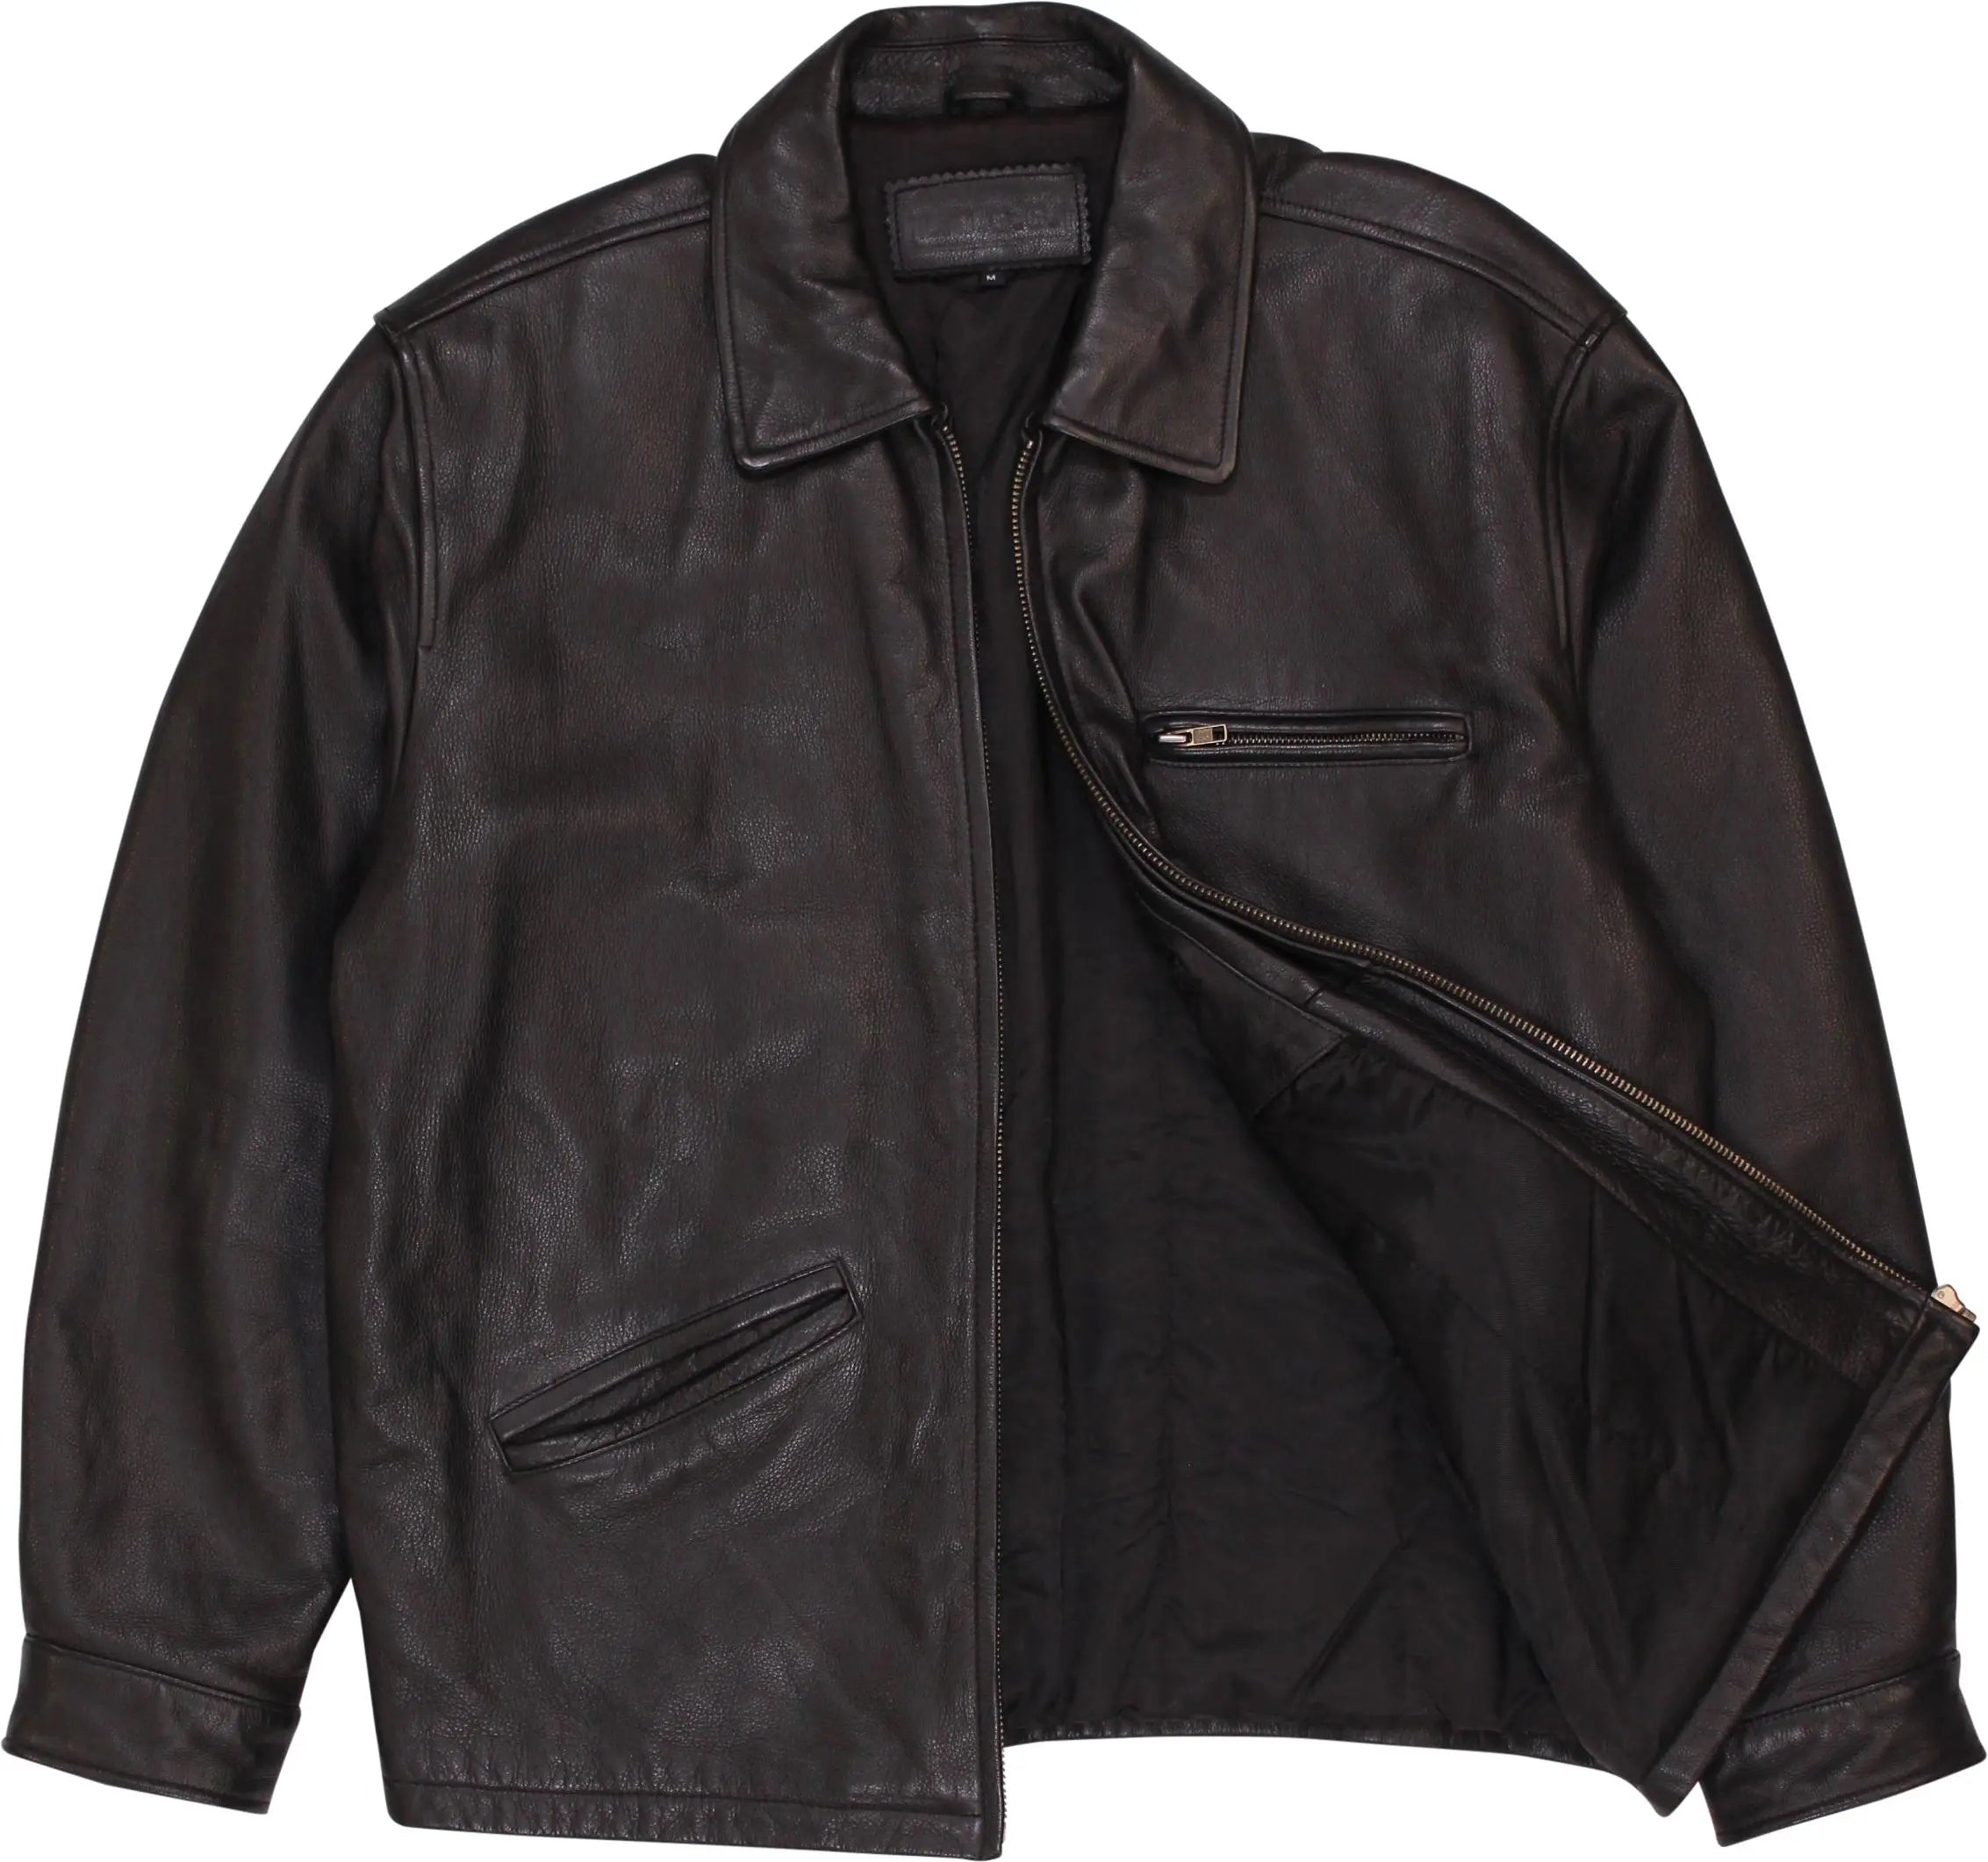 L.O.G.G. - Vintage Black Leather Jacket- ThriftTale.com - Vintage and second handclothing